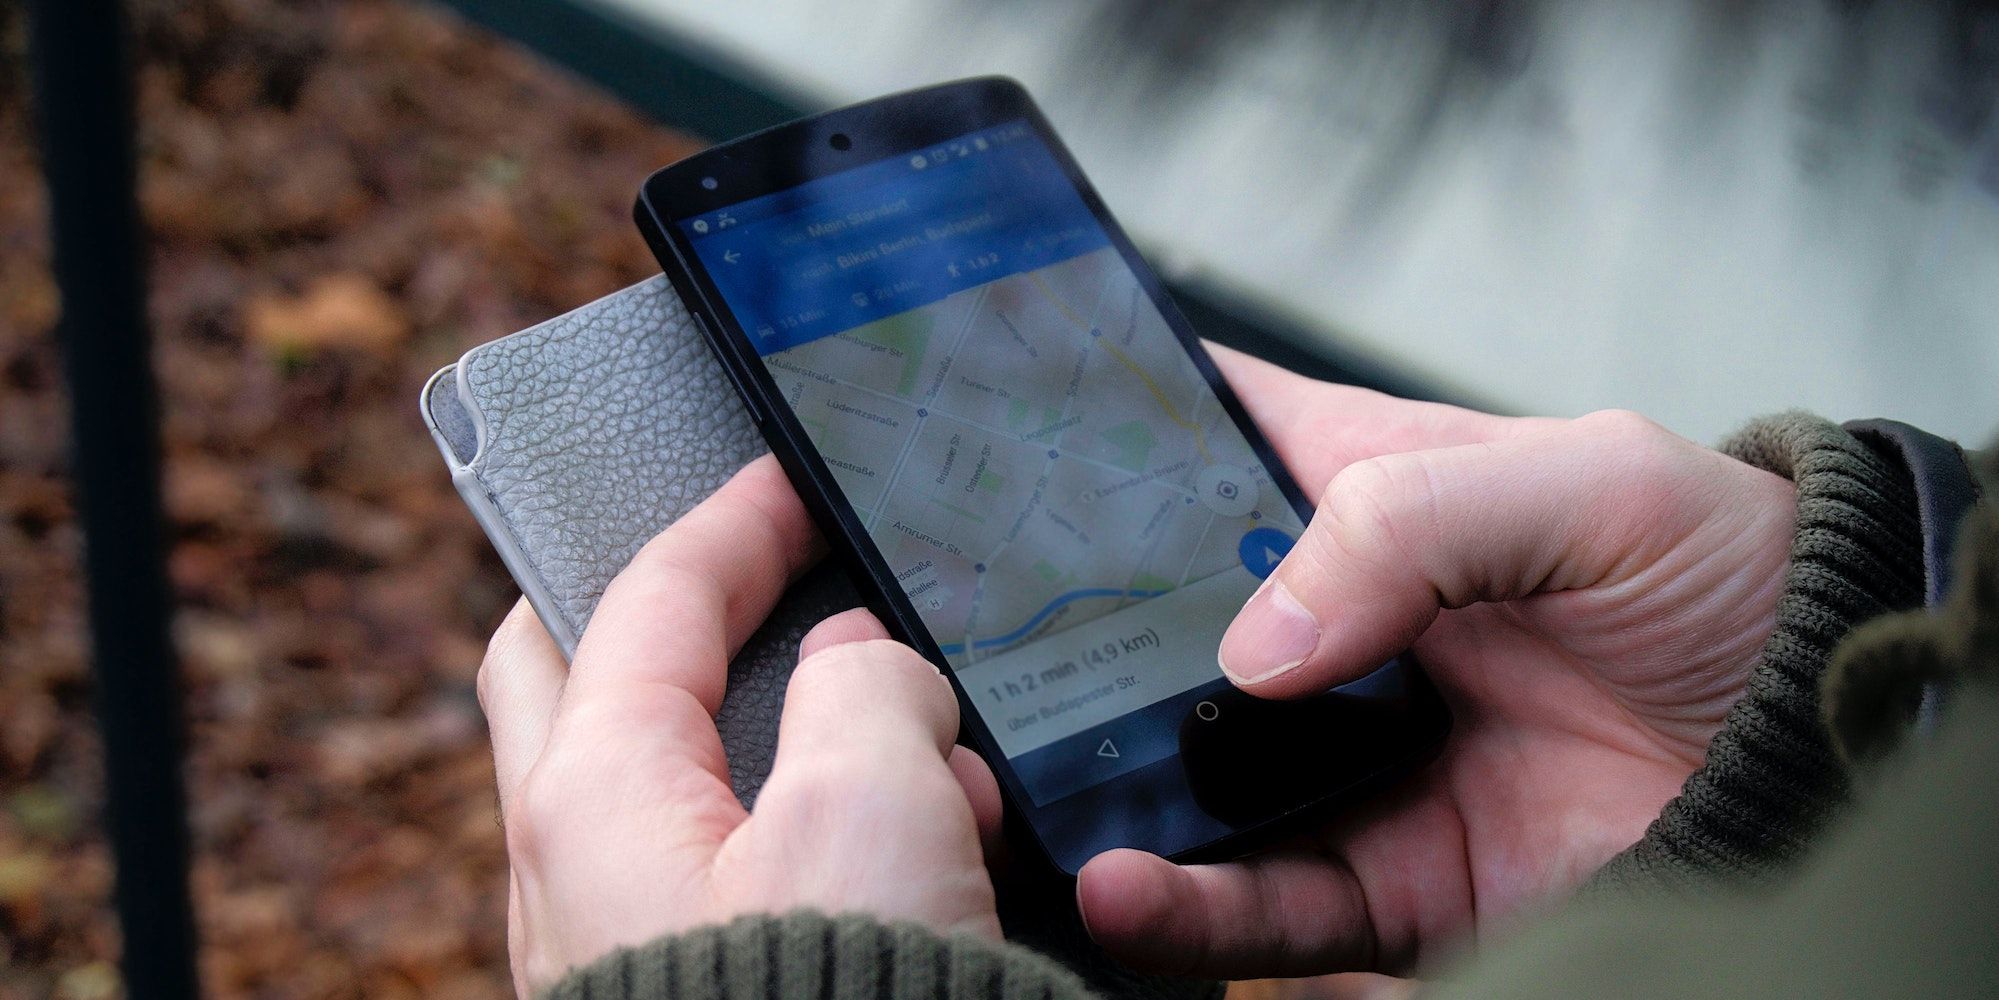 Verifique se o GPS está ativado no seu telefone Pixel
Verifique se o seu telefone Pixel está com a localização ativada